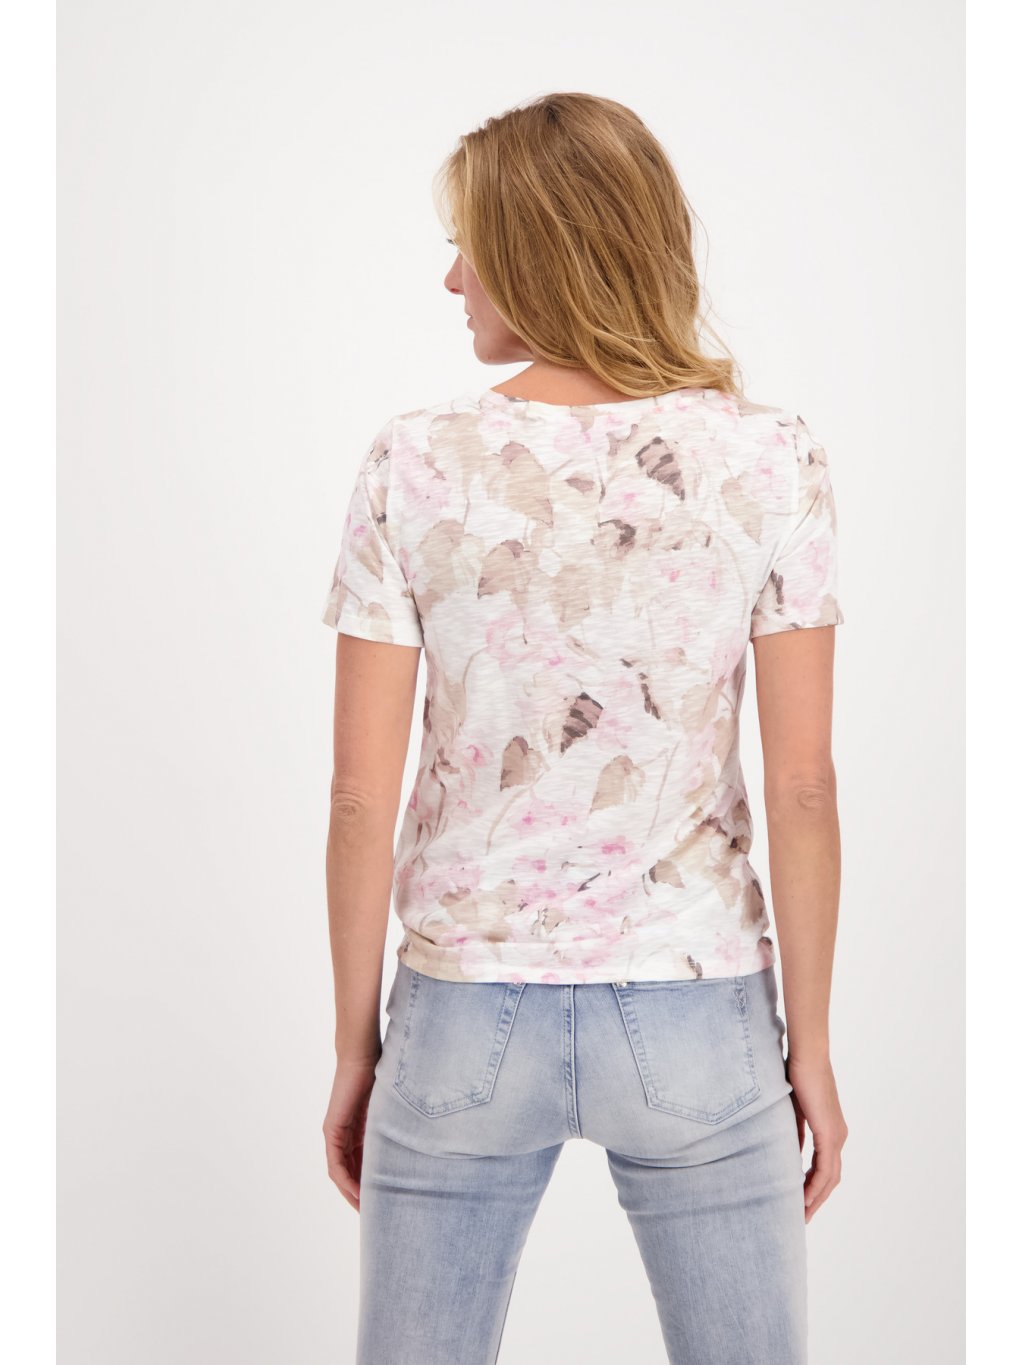 Tričko Monari 7424 krémové s růžovým květem